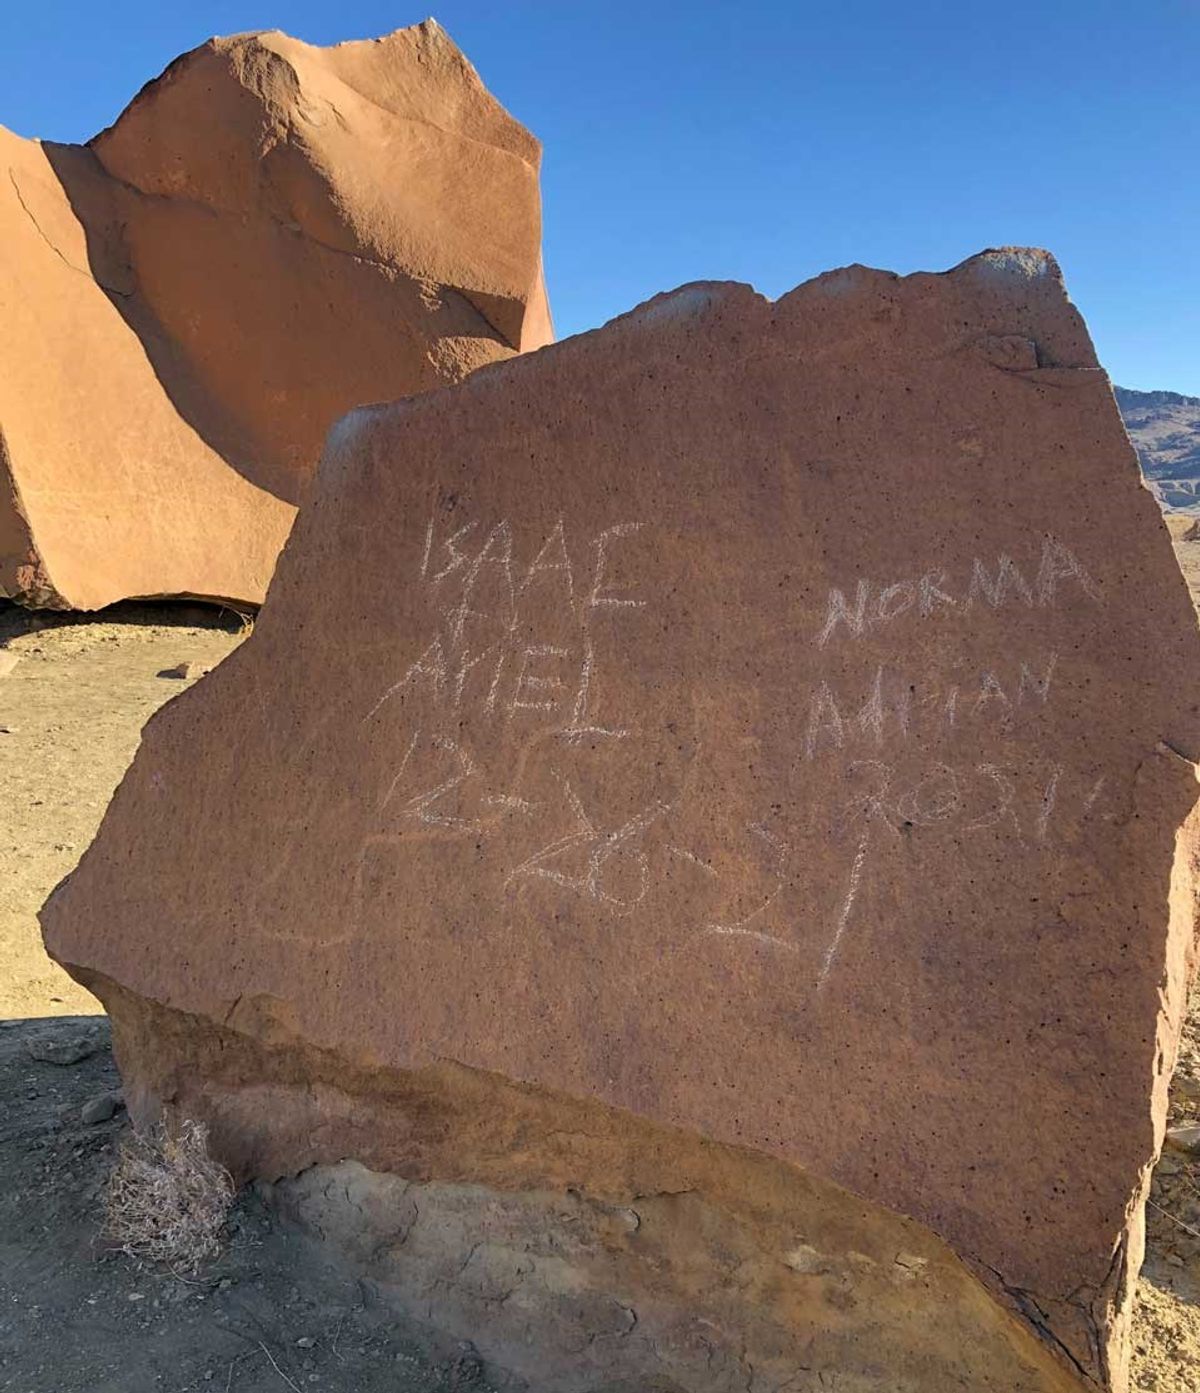 Vandalism on rock art panel in Big Bend National Park Photo: National Park Service.